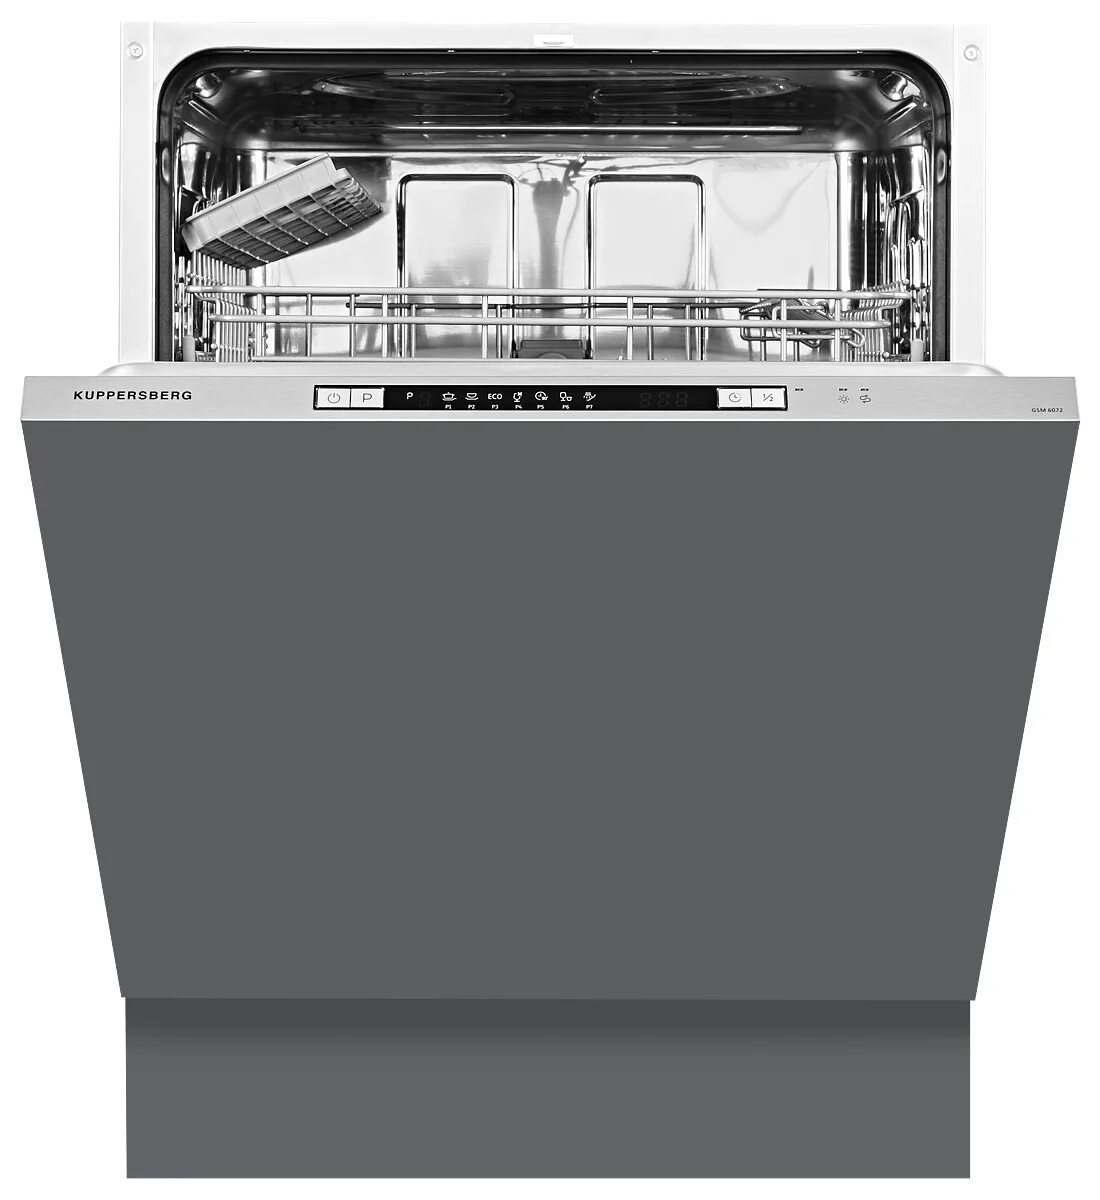 Посудомоечная машина куперсберг купить. Встраиваемая посудомоечная машина Kuppersberg GSM 6072. Посудомоечная машина Kuppersberg GS 6005. Встраиваемая посудомоечная машина Kuppersberg GSM 6073. Куперсберг встраиваемые посудомоечные машины 60 см.